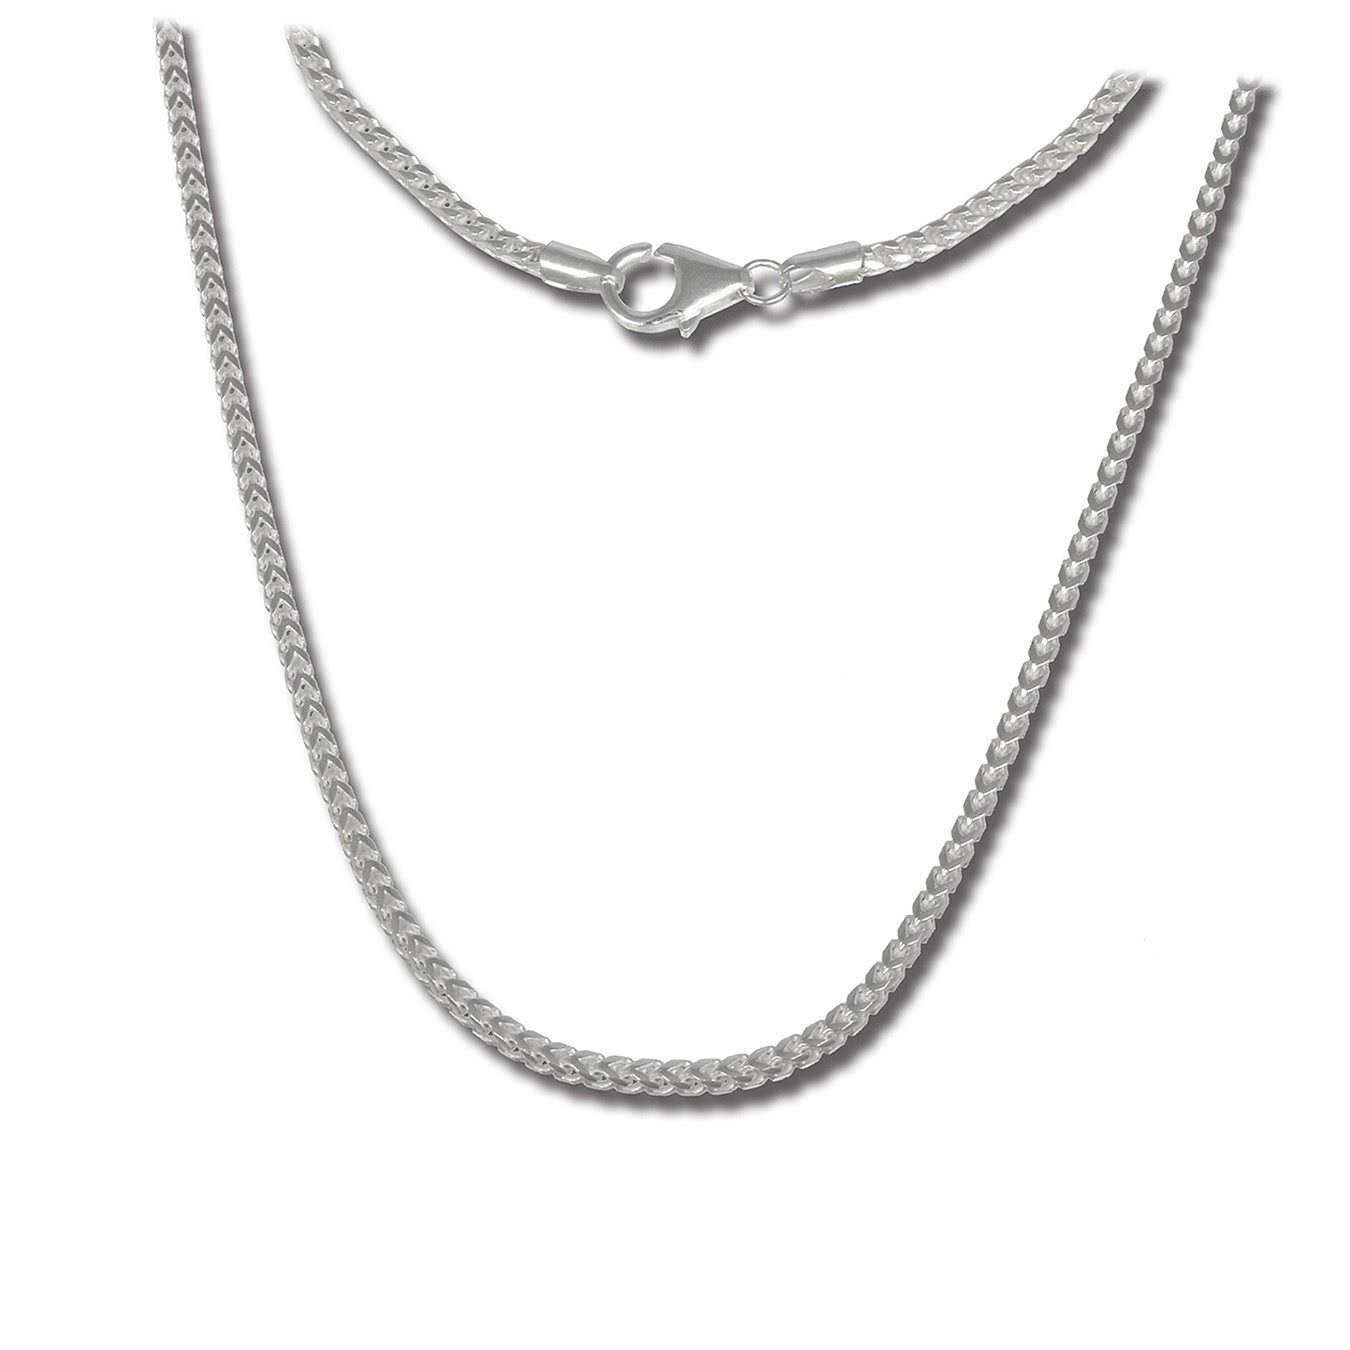 SilberDream Silberkette »SDK20470 SilberDream Halskette silber Damen Echt« ( Halskette), Halsketten ca. 70cm, 925 Sterling Silber, Farbe: silber,  Made-In Germany online kaufen | OTTO